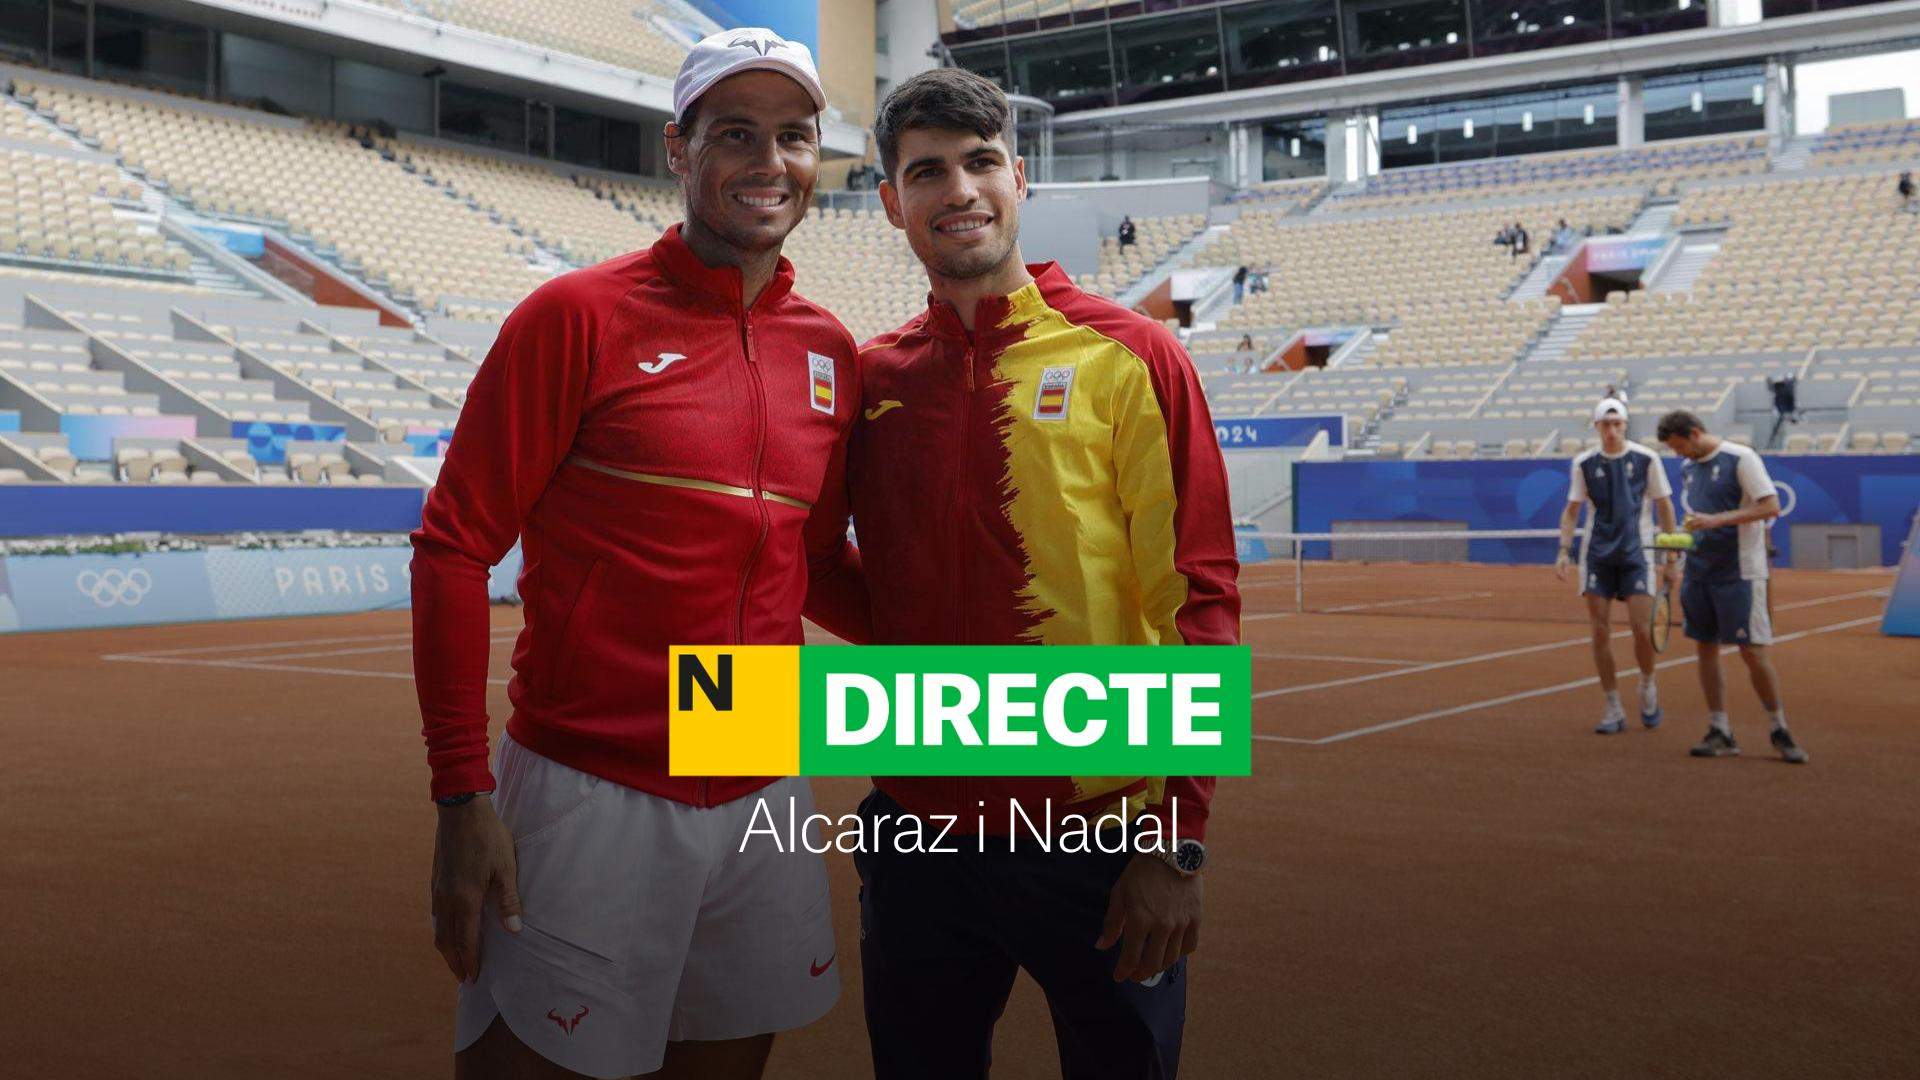 González/Molteni - Alcaraz/Nadal als Jocs Olímpics de París 2024, DIRECTE | Debut als dobles